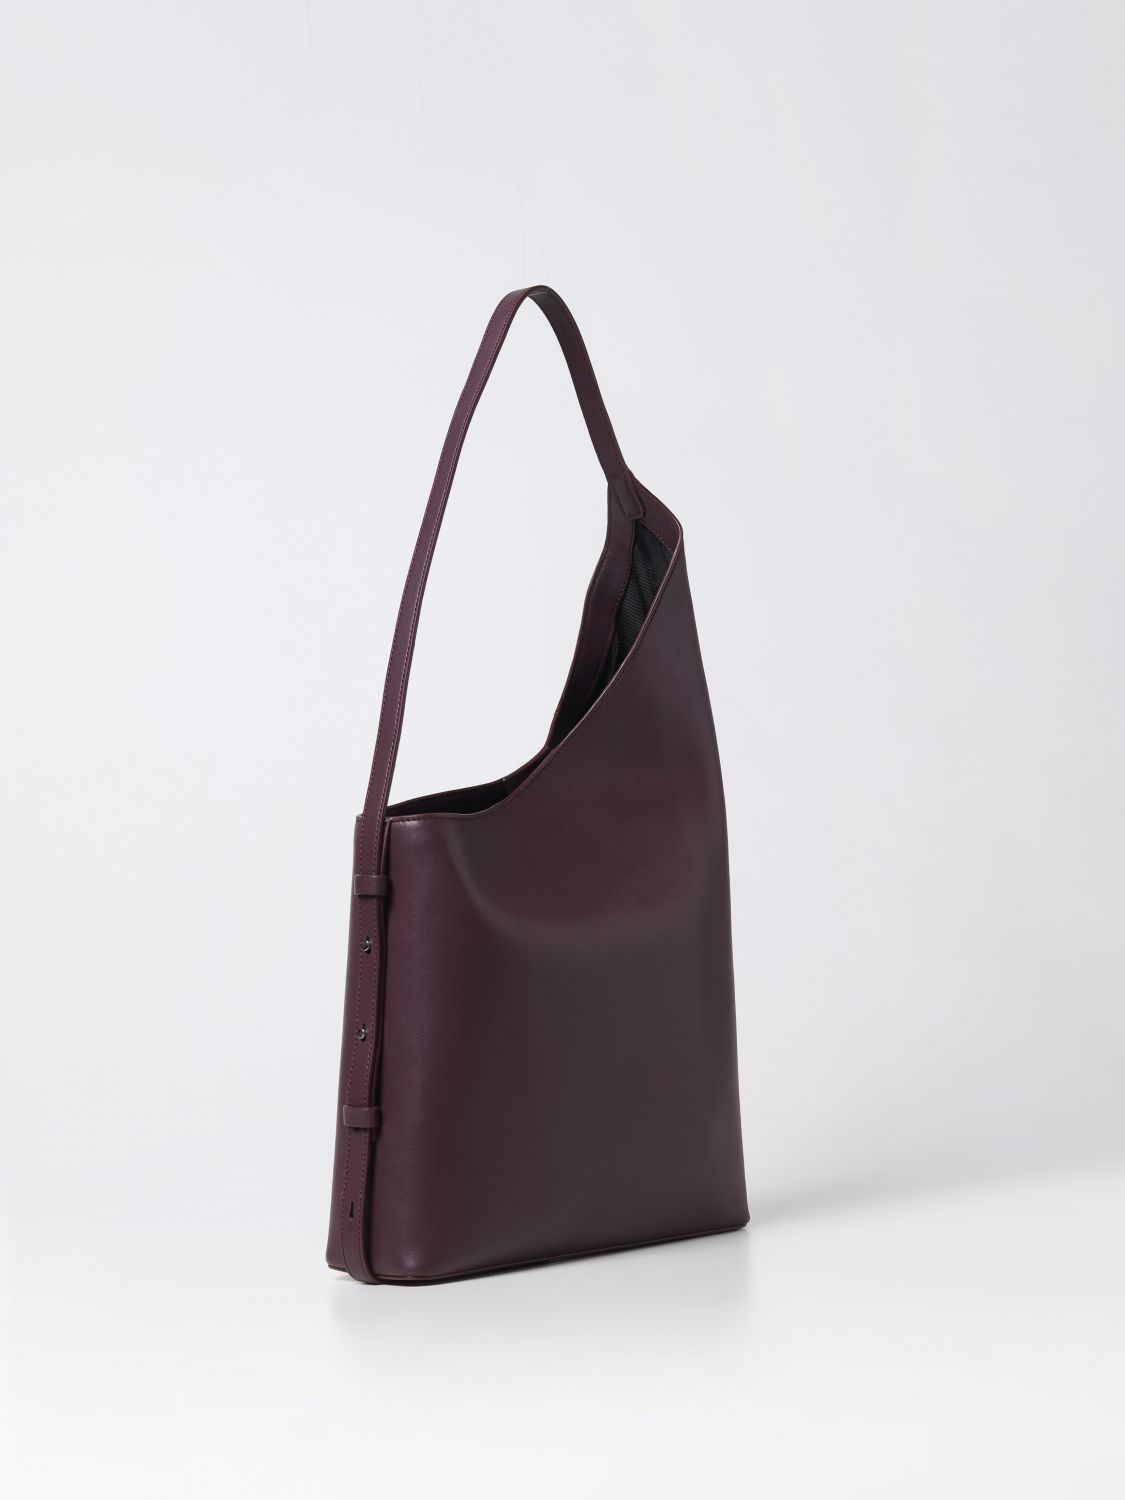 Aesther Ekme Shoulder Bag Woman Color Violet